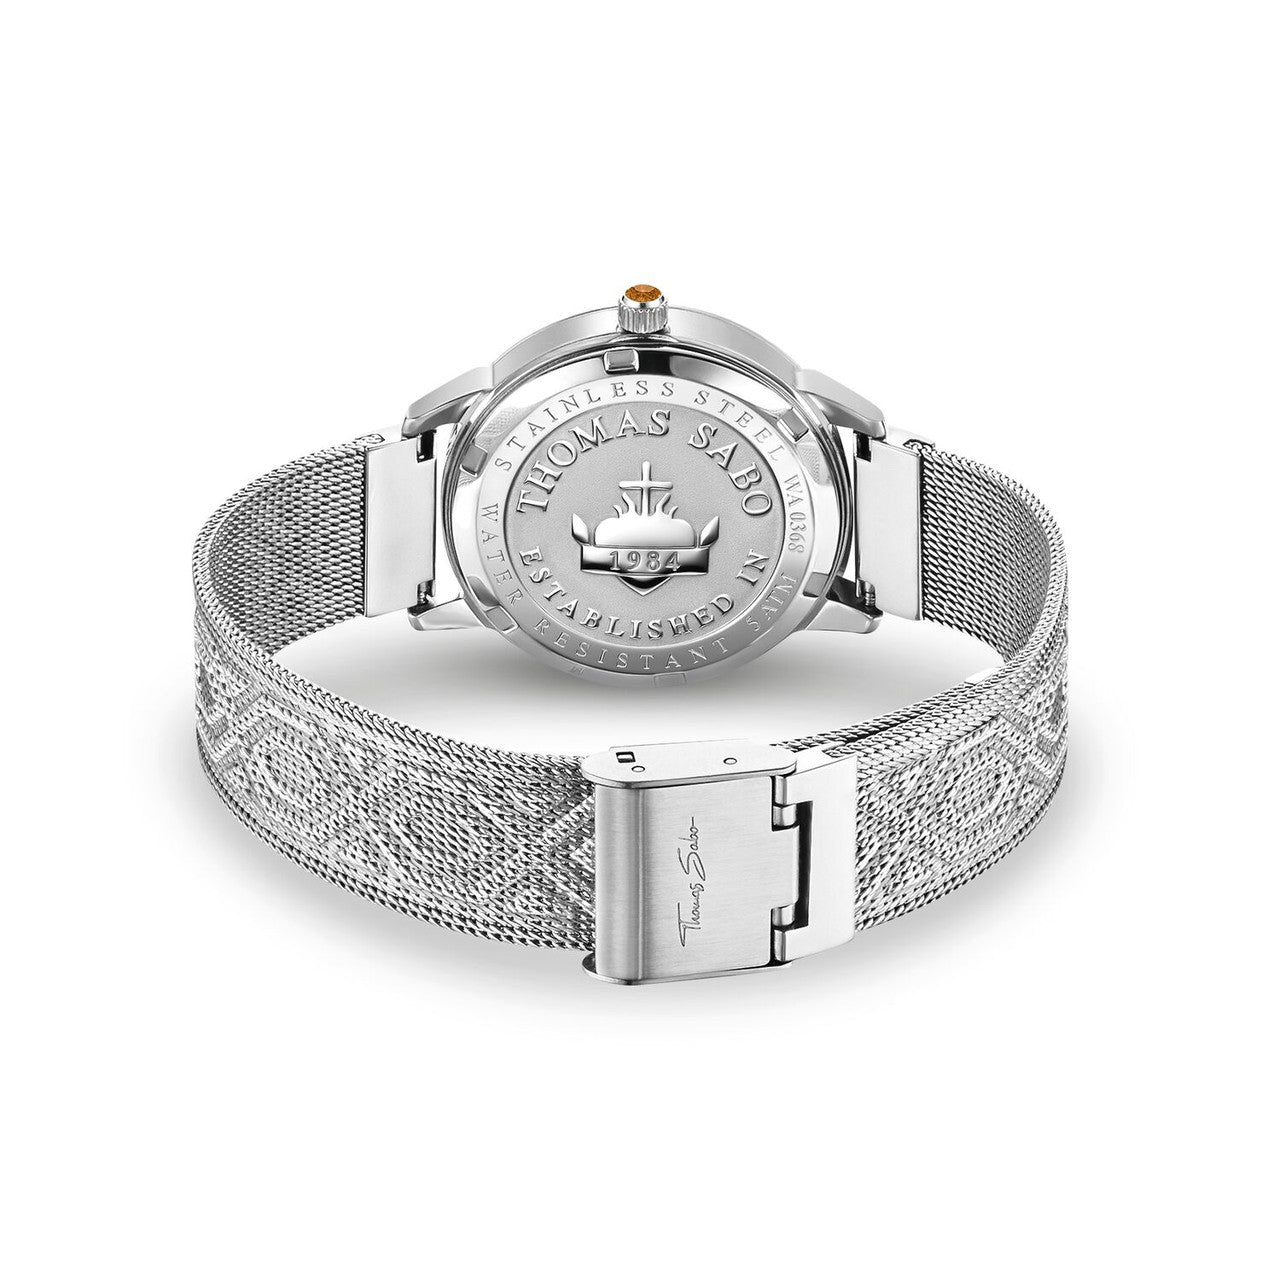 THOMAS SABO Women's Watch Dragonfly Silver -  WA0368-201-215-33 MM | Ice Jewellery Australia